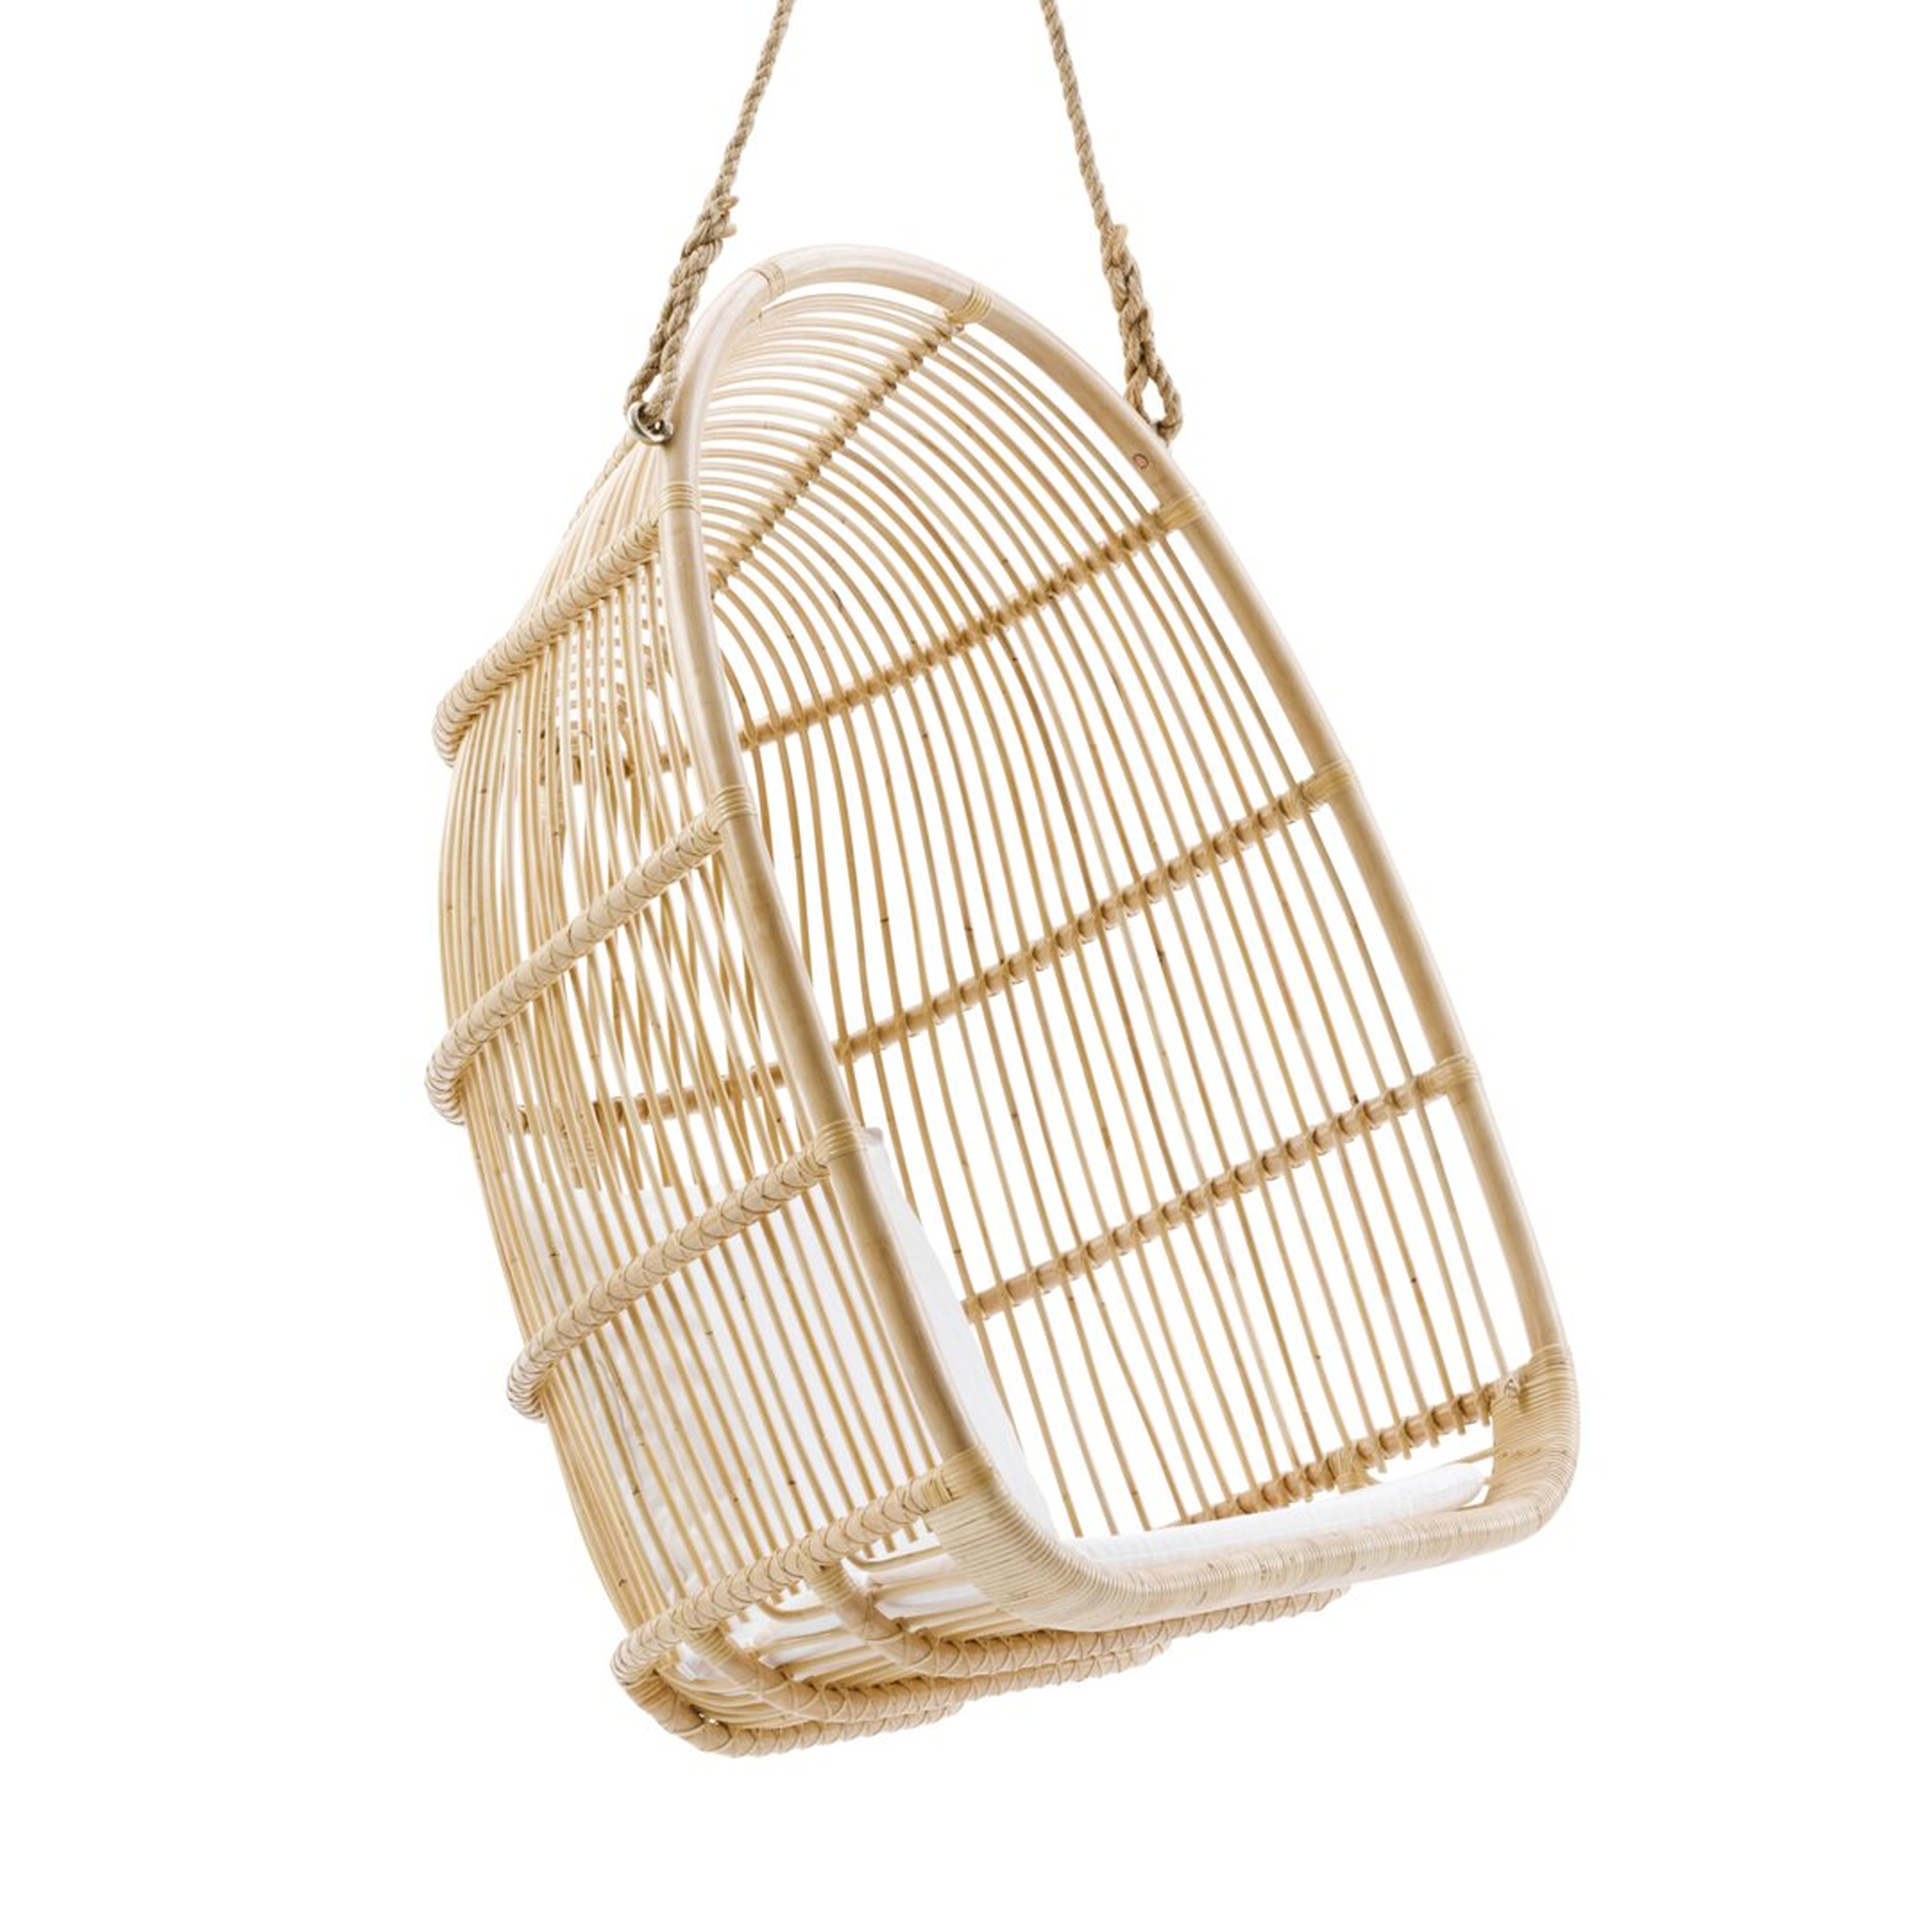 "Sika Design Renoir Originals Swing Chair" - Perigold